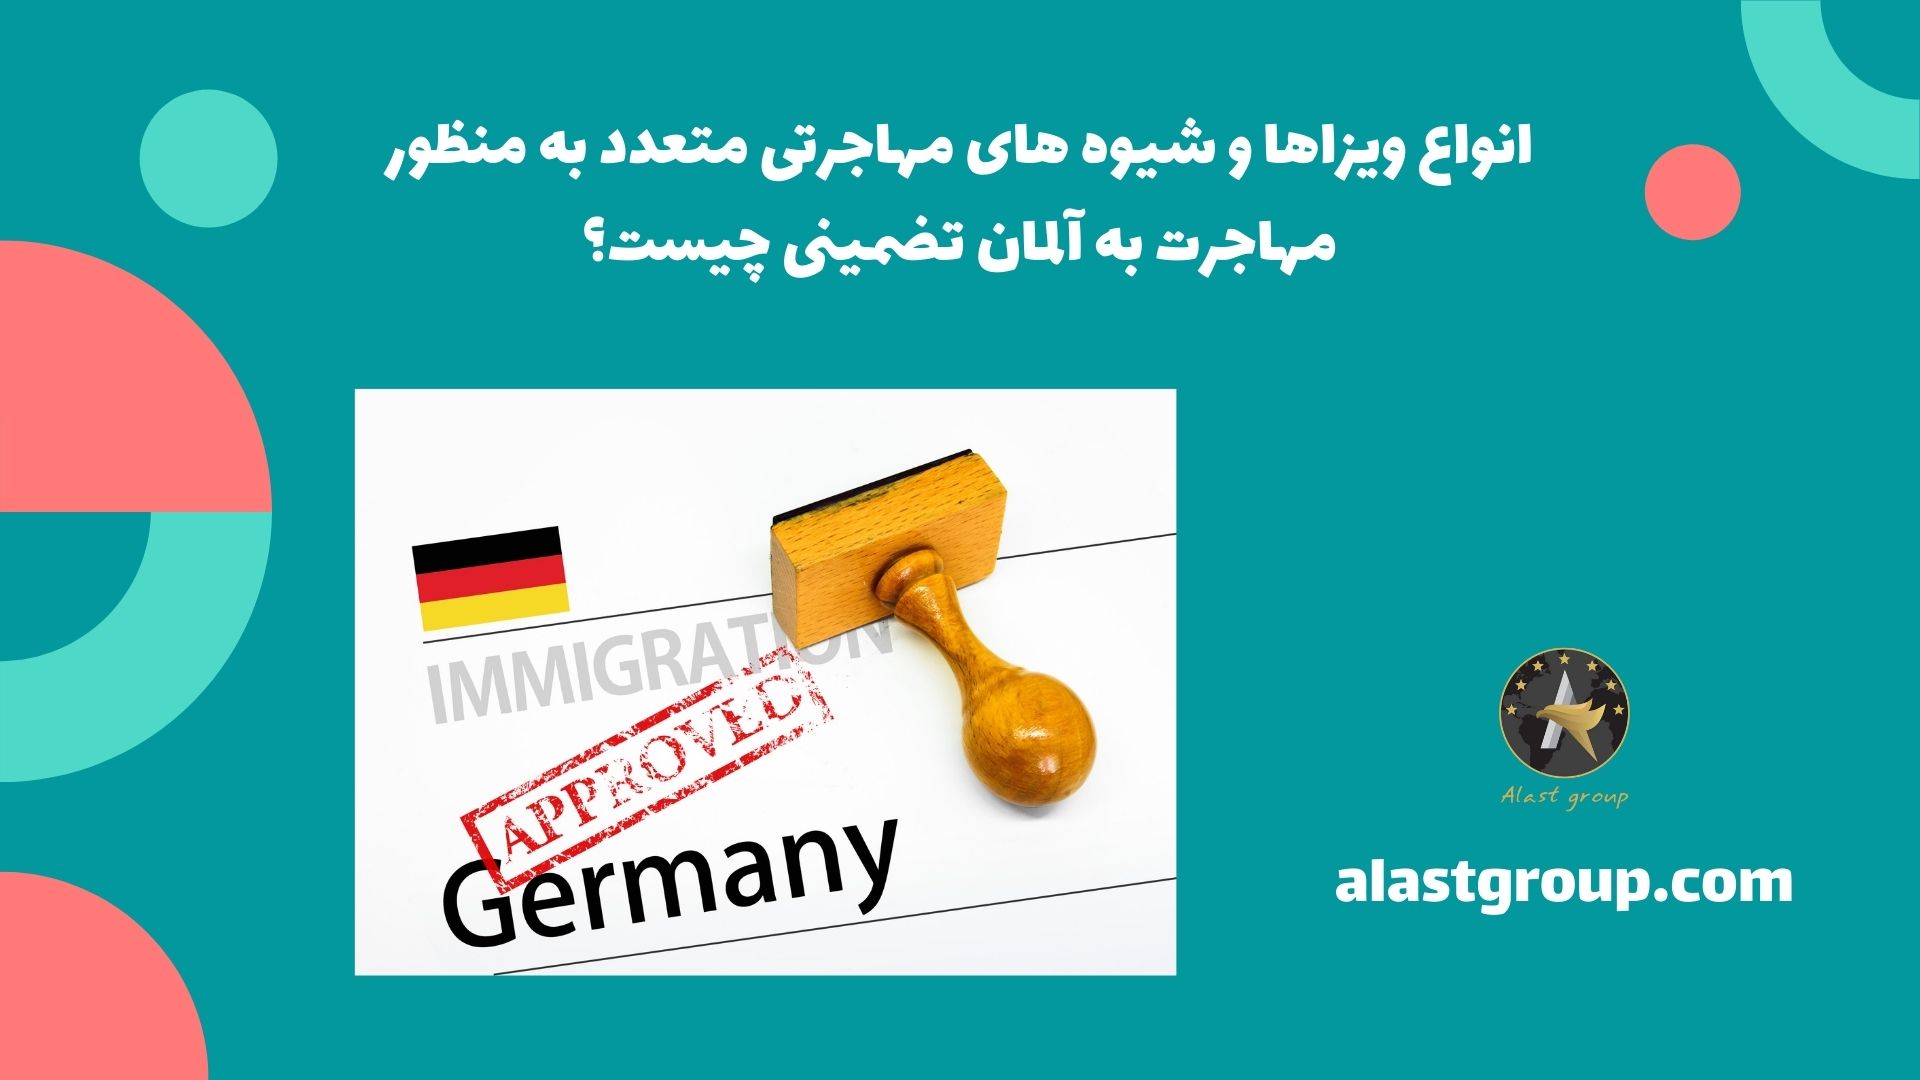 انواع ویزاها و شیوه های مهاجرتی متعدد به منظور مهاجرت به آلمان تضمینی چیست؟